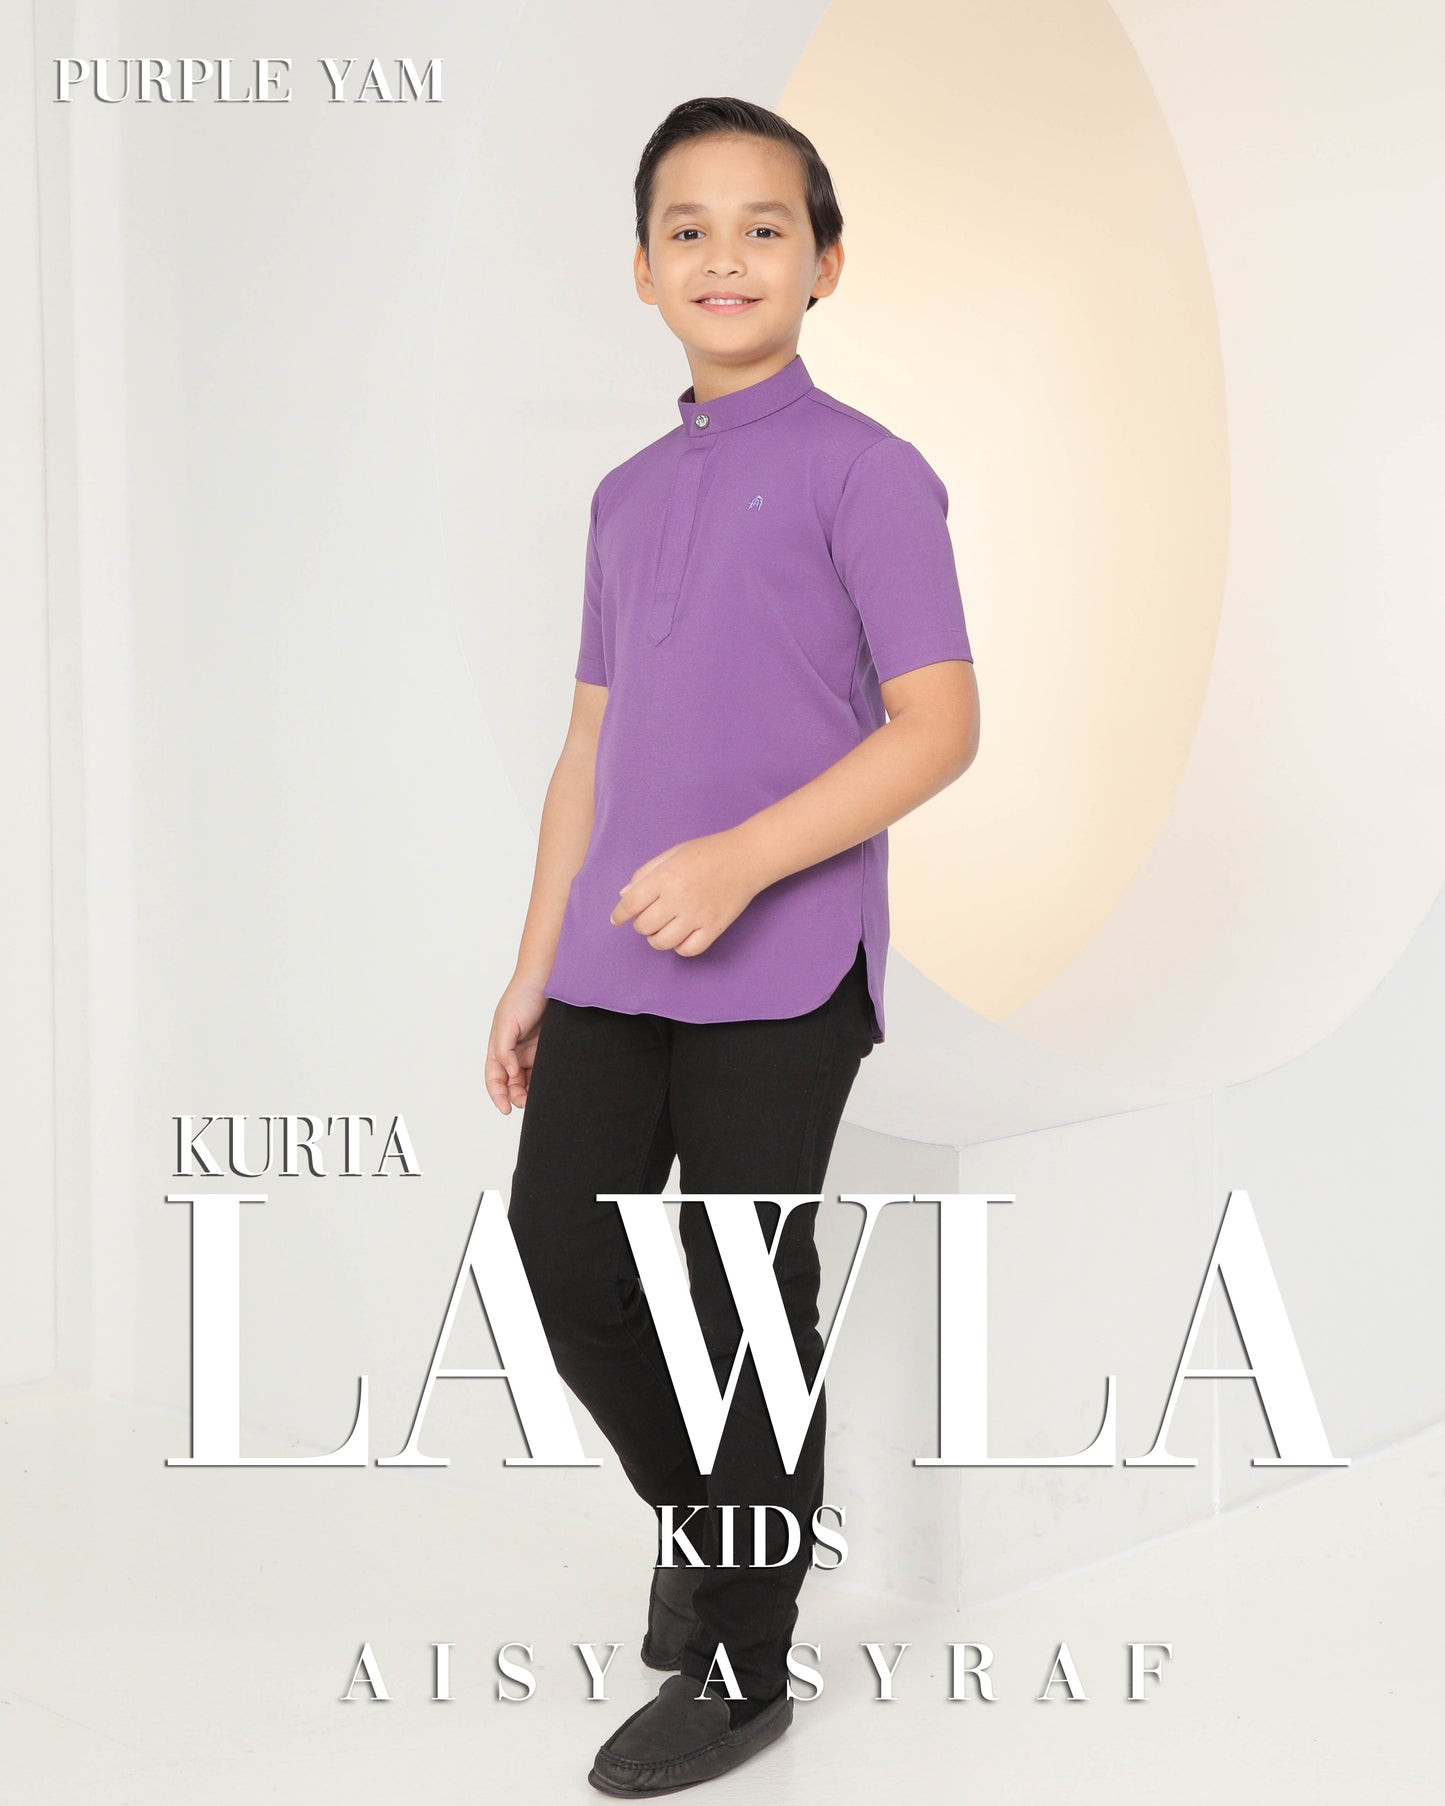 Kurta Lawla Kids - Purple Yam